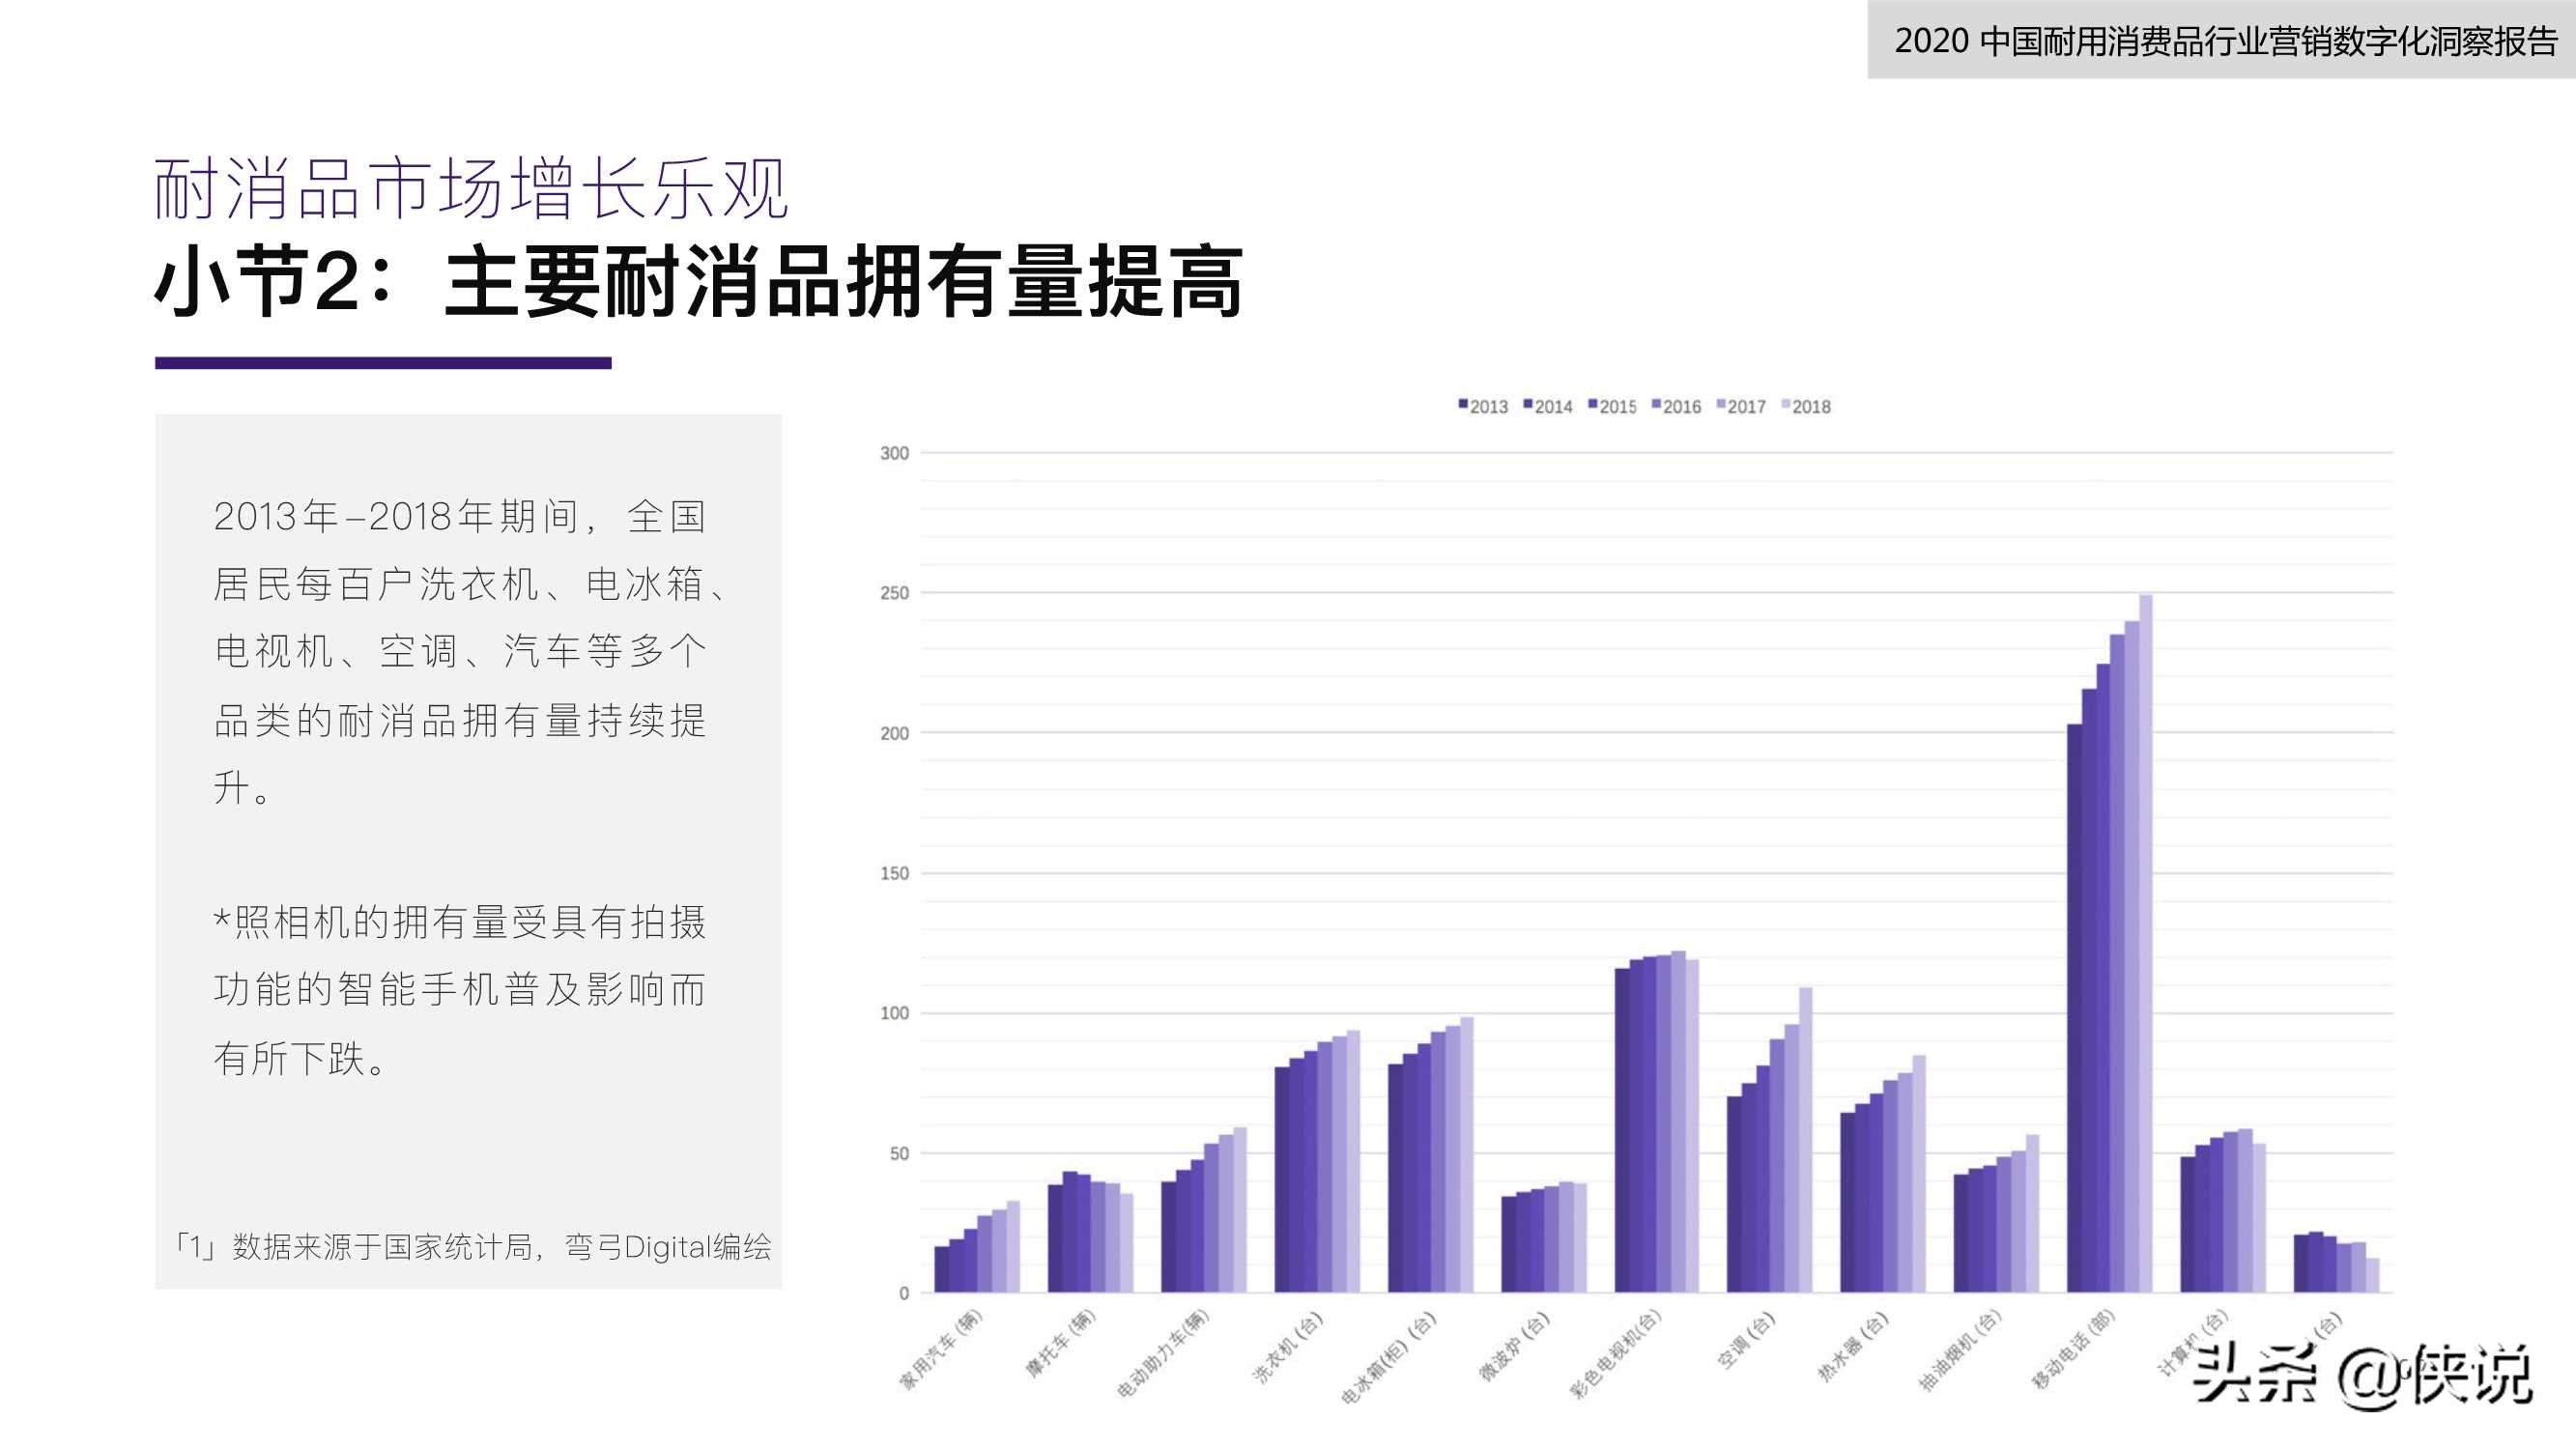 2020中国耐用消费品行业营销数字化洞察报告